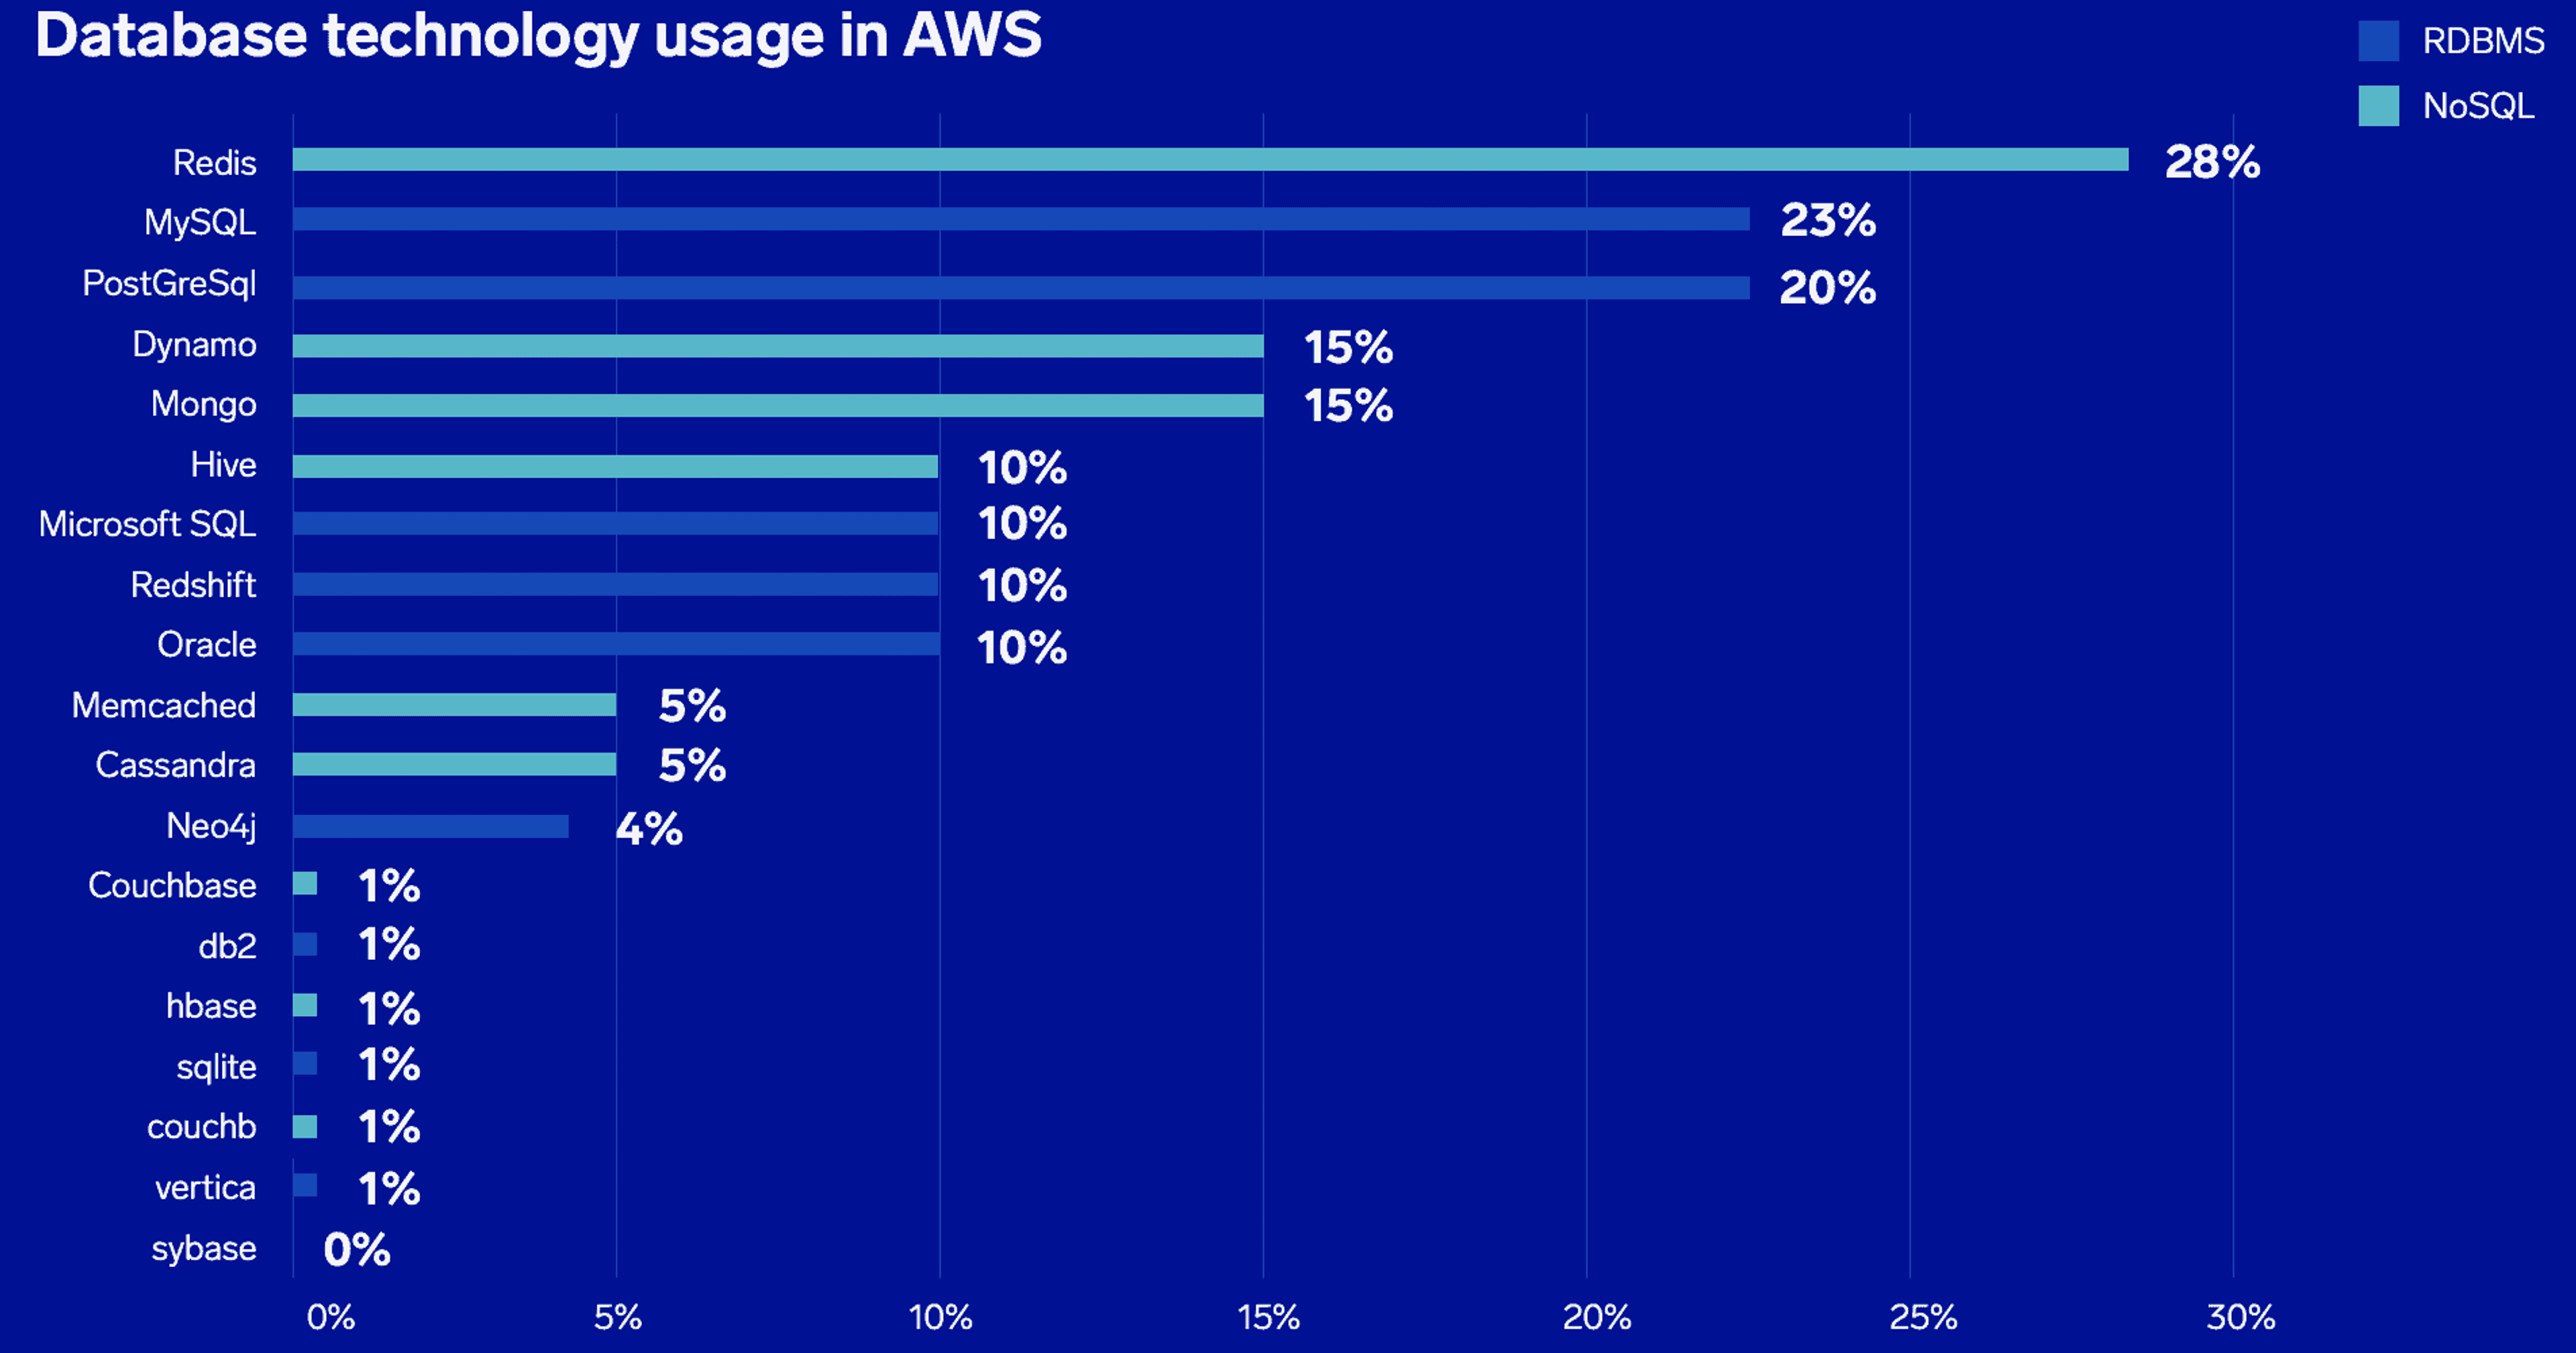 Redis est la base de données la plus déployée sur l'infrastructure AWS